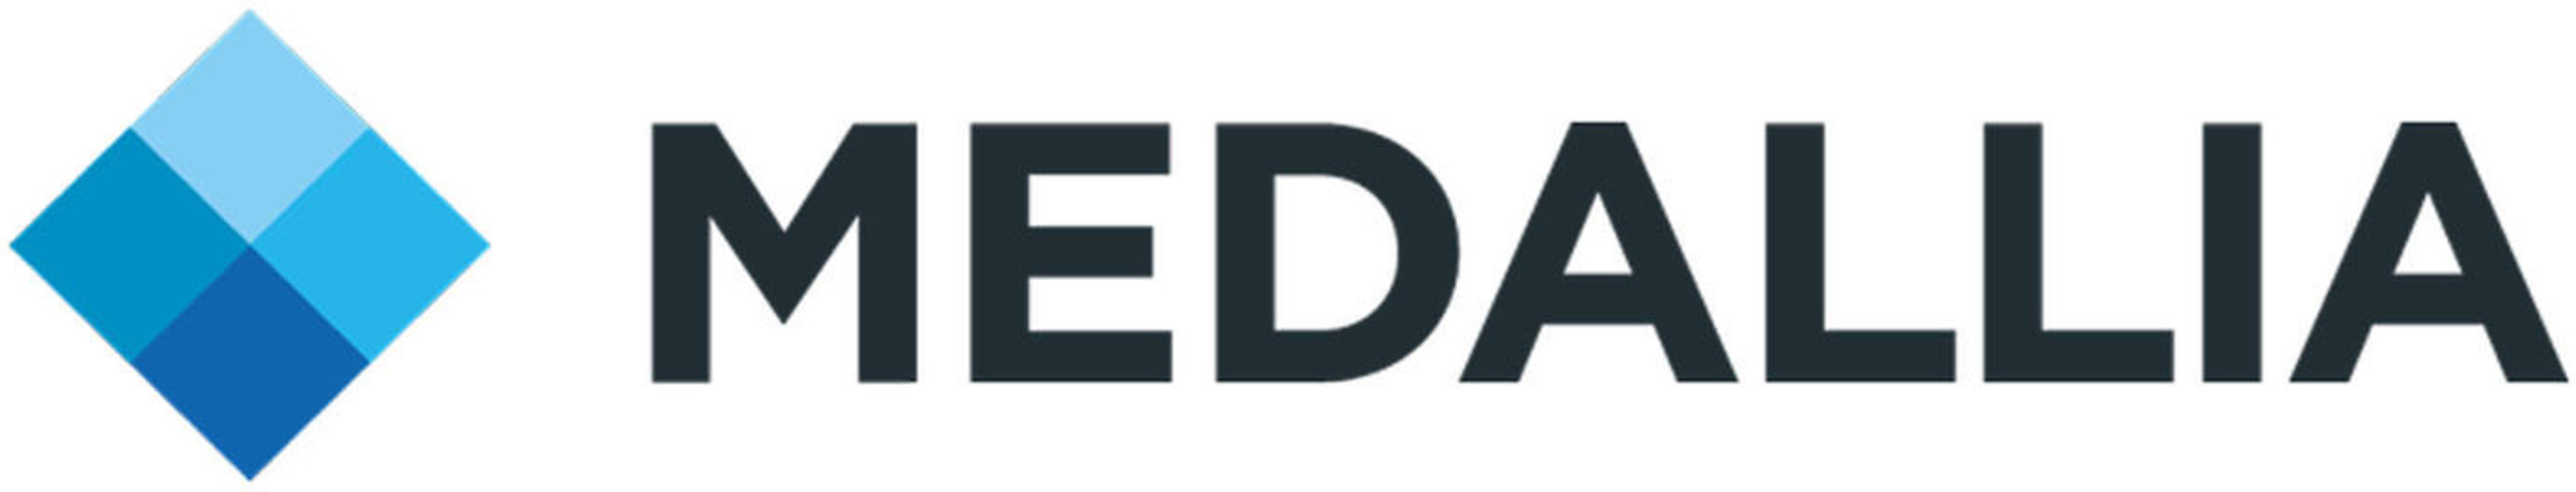 Medallia company logo.